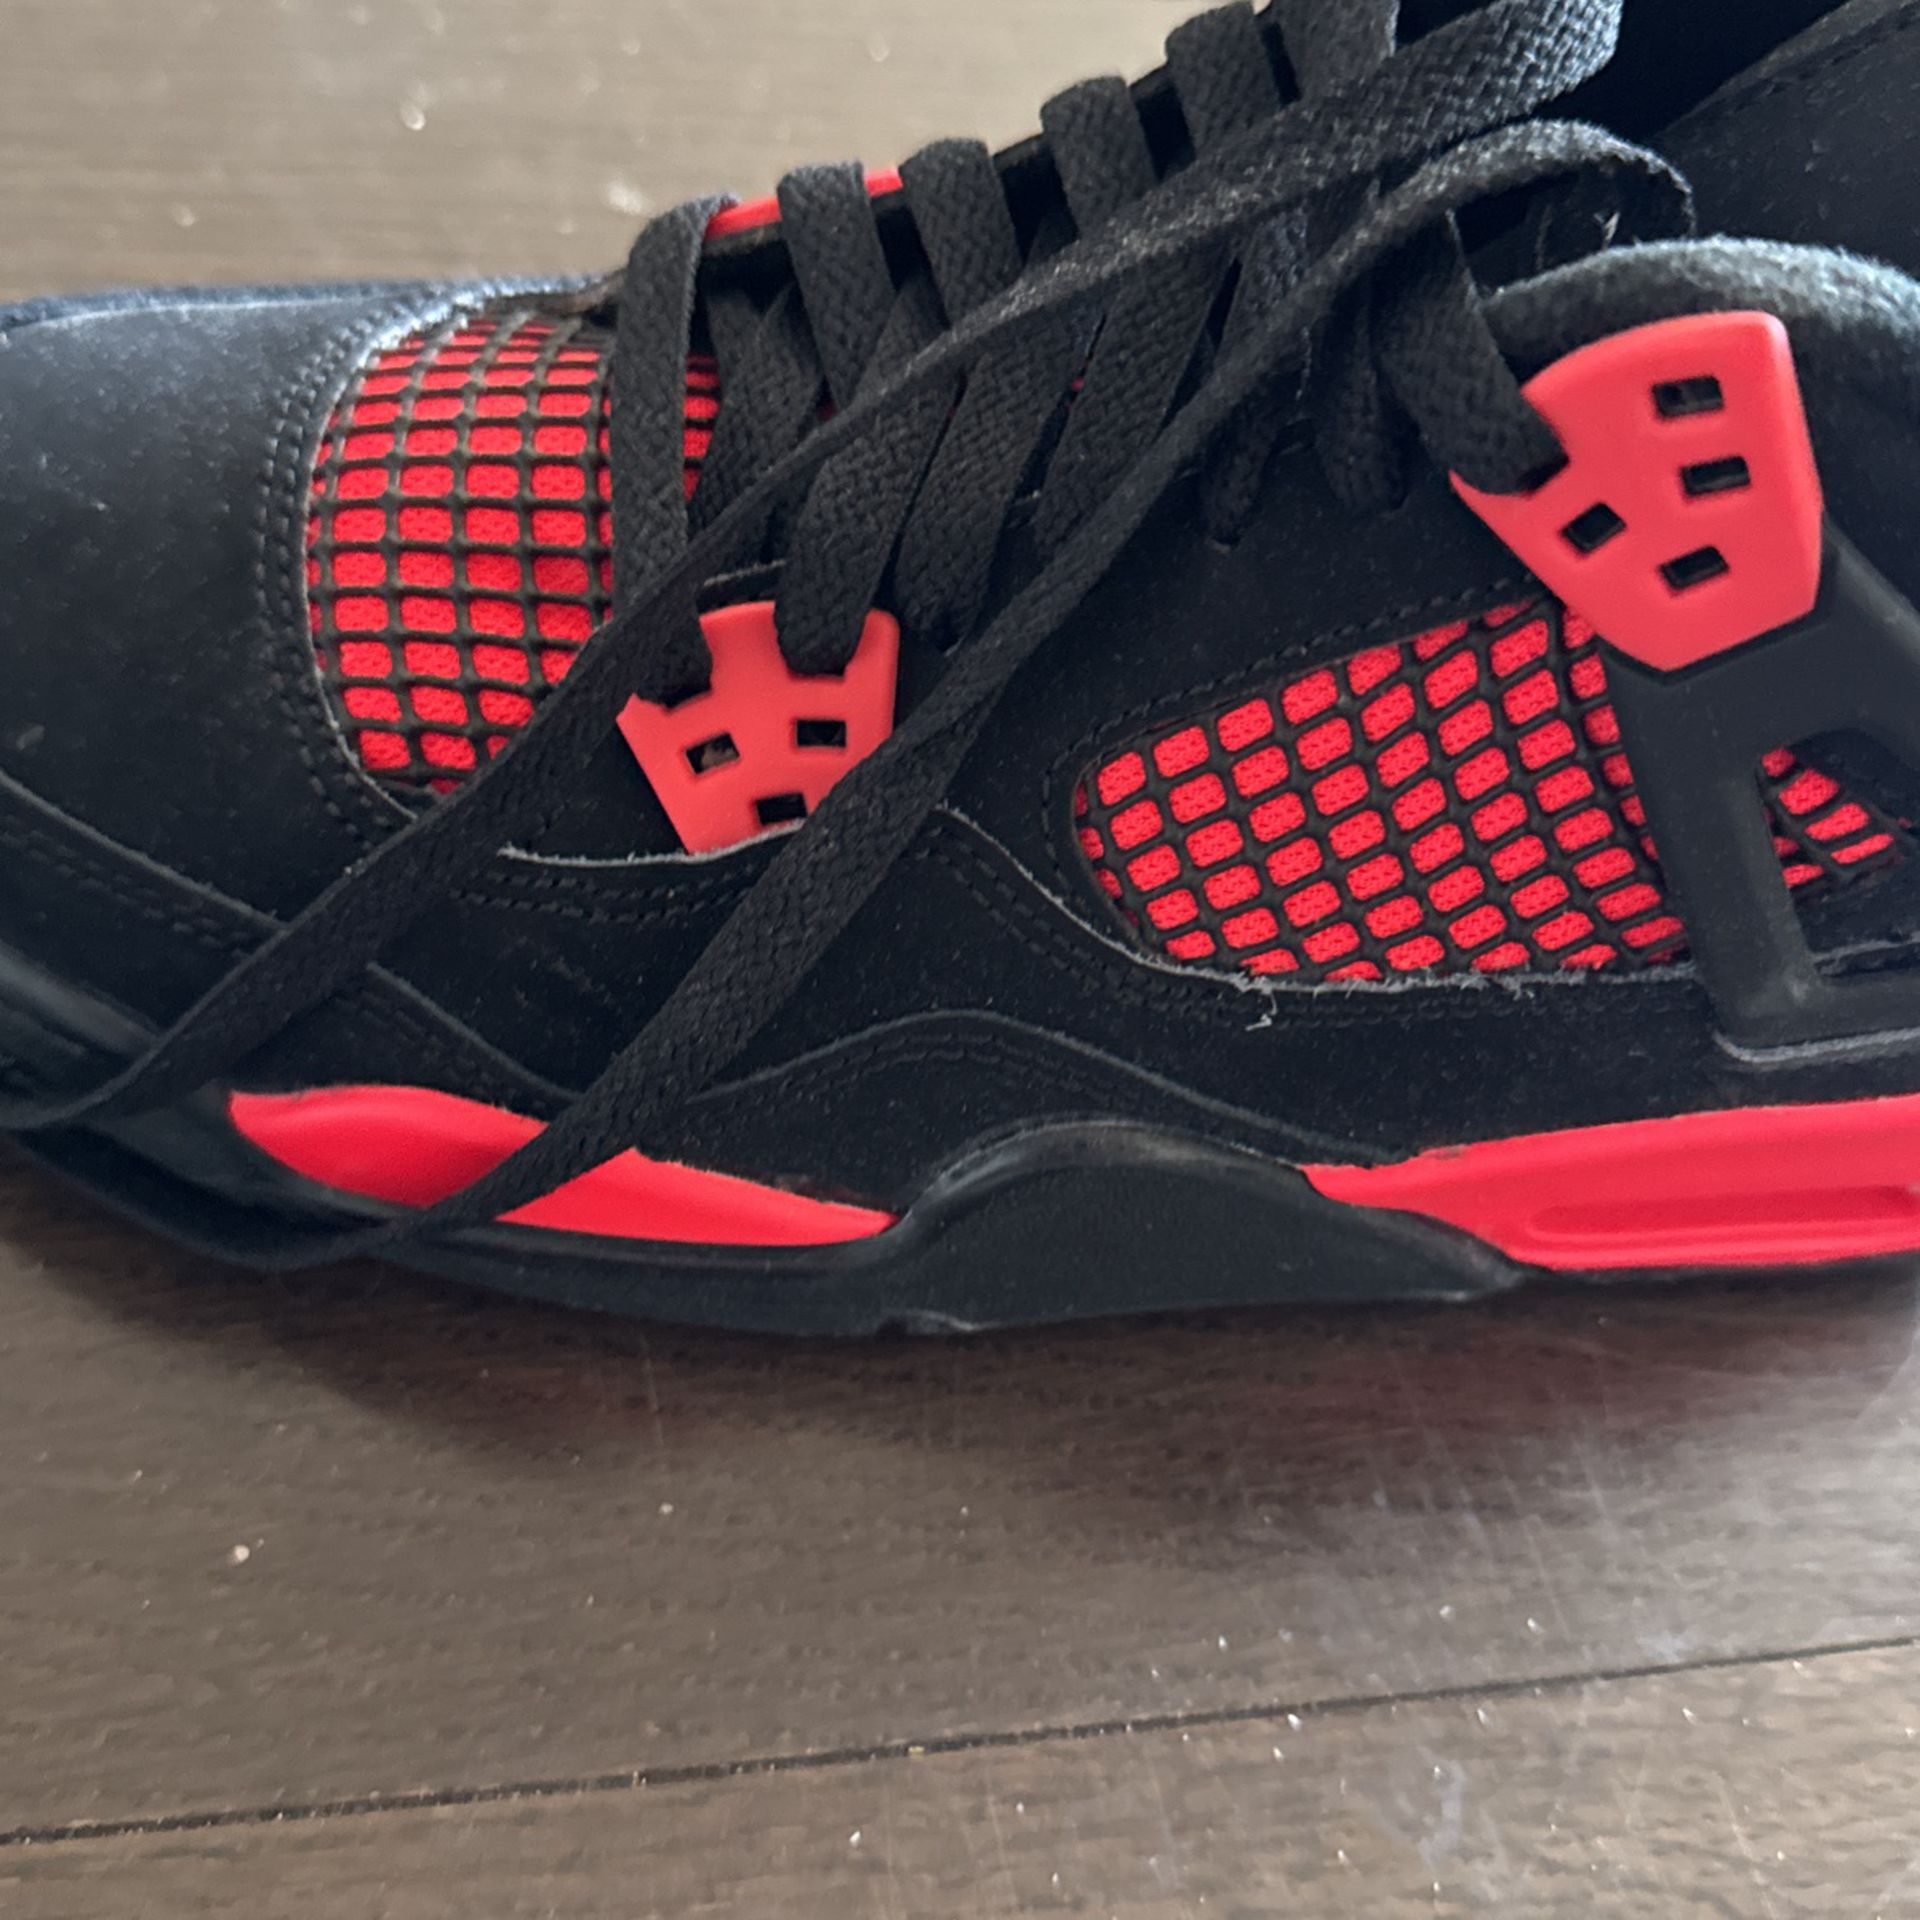 Black And Red Jordan retro 3